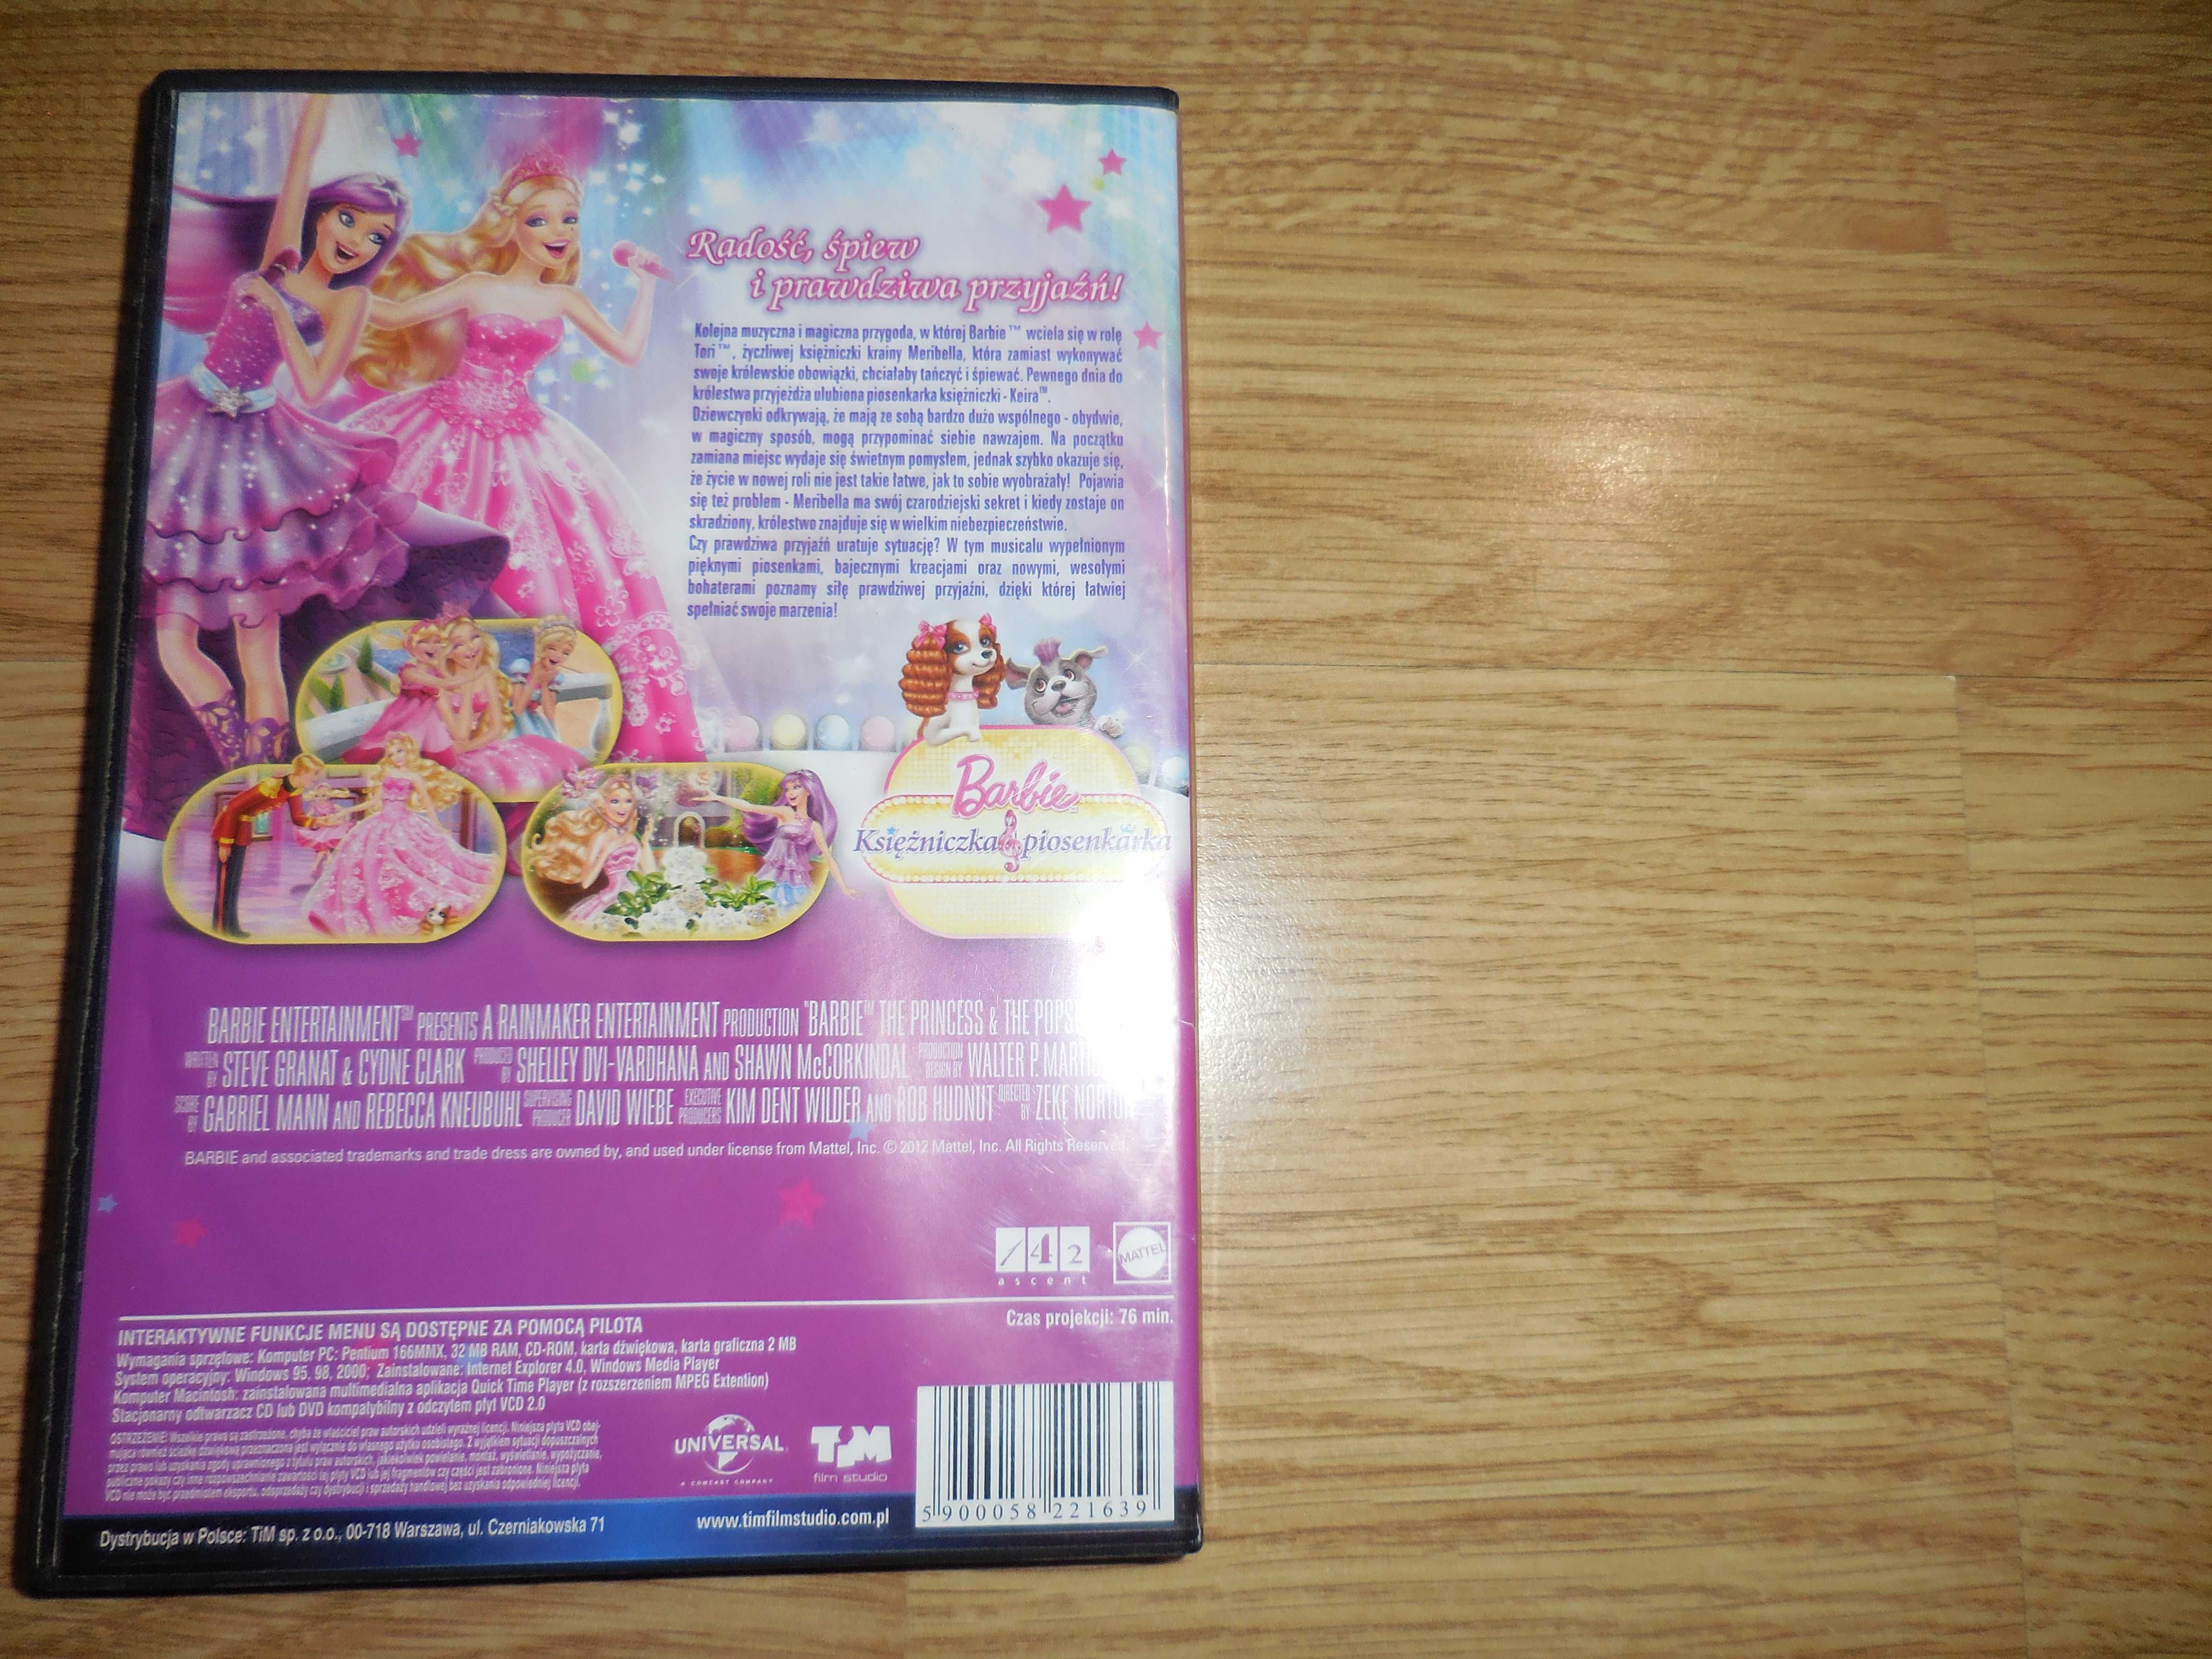 BAJKI 'Barbie księżniczka i piosenkarka' 2 VCD